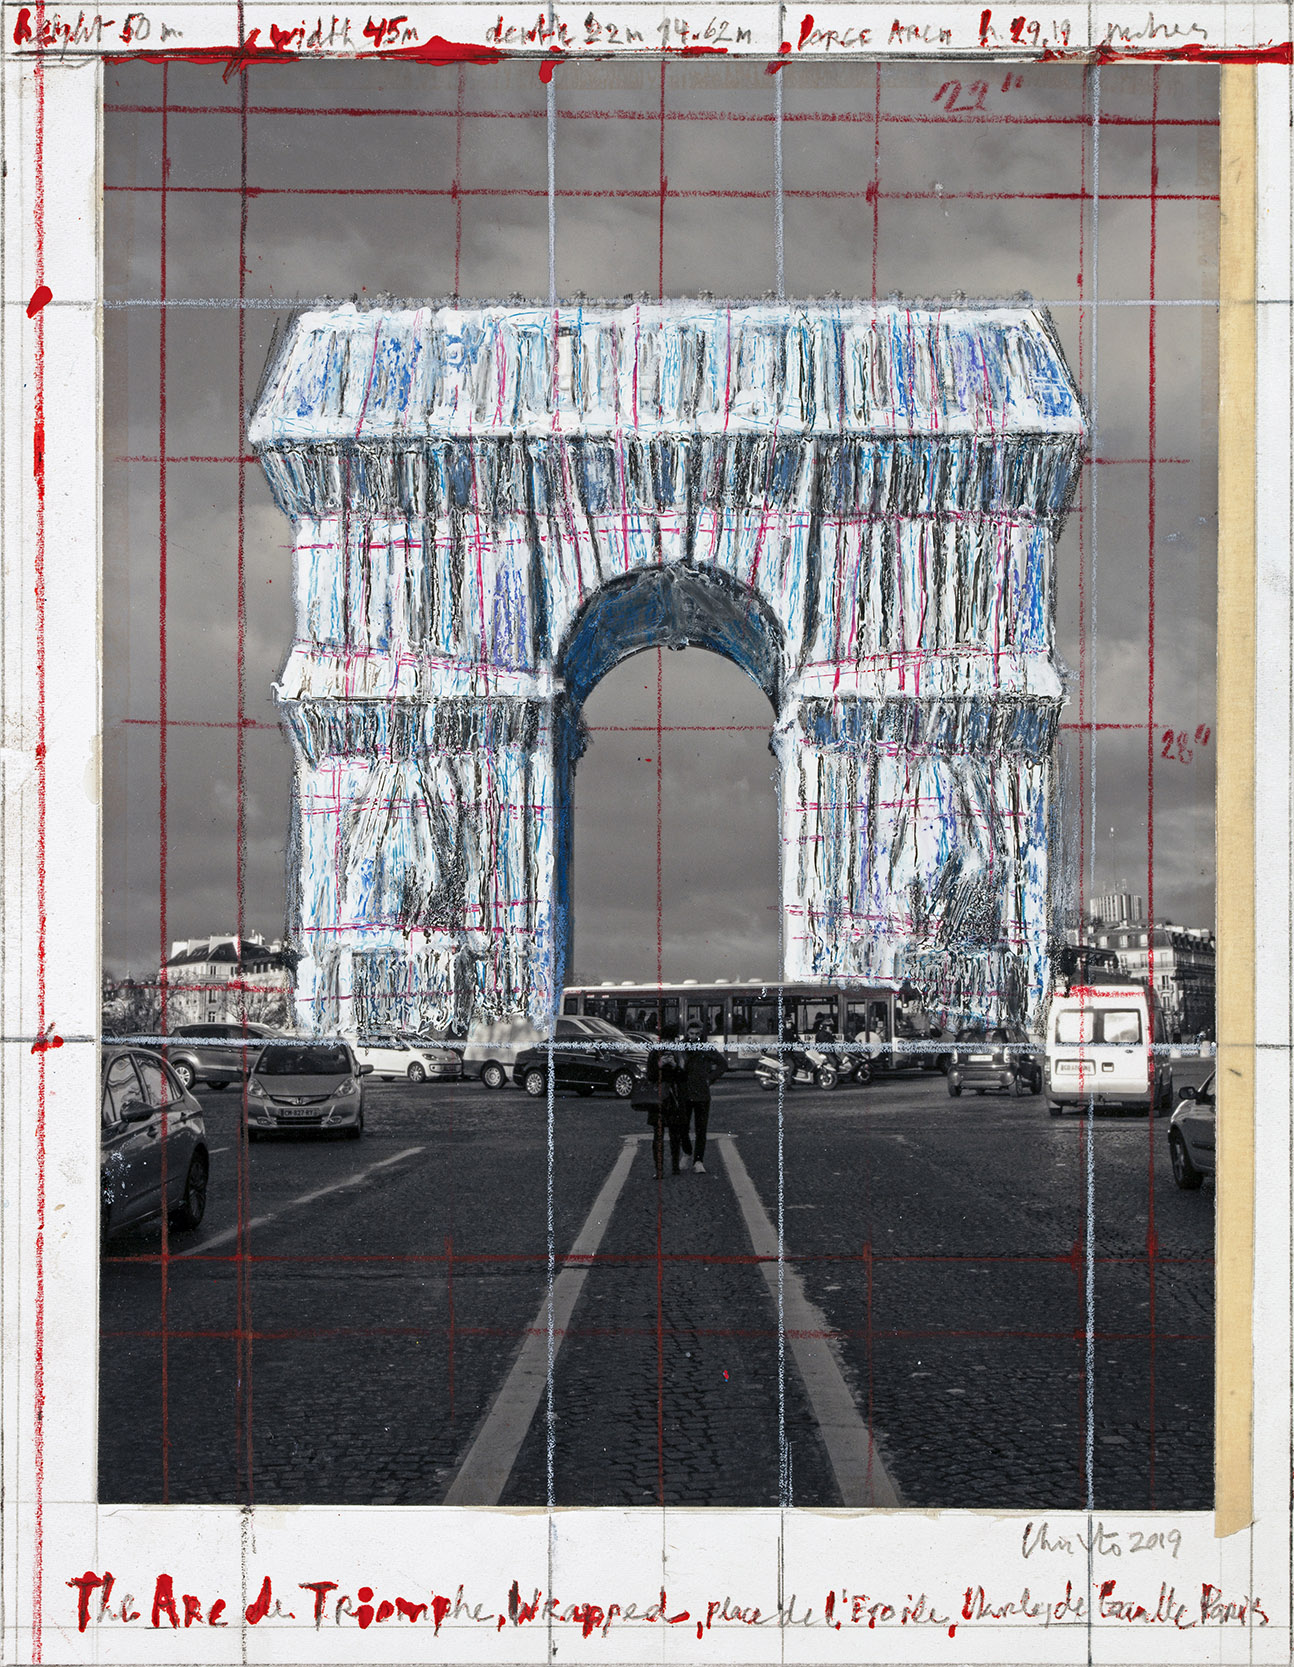 L'Arc de Triomphe, Wrapped - The Arc de Triomphe, Wrapped, Place de l'Etoile, Charles de Gaulle, Paris